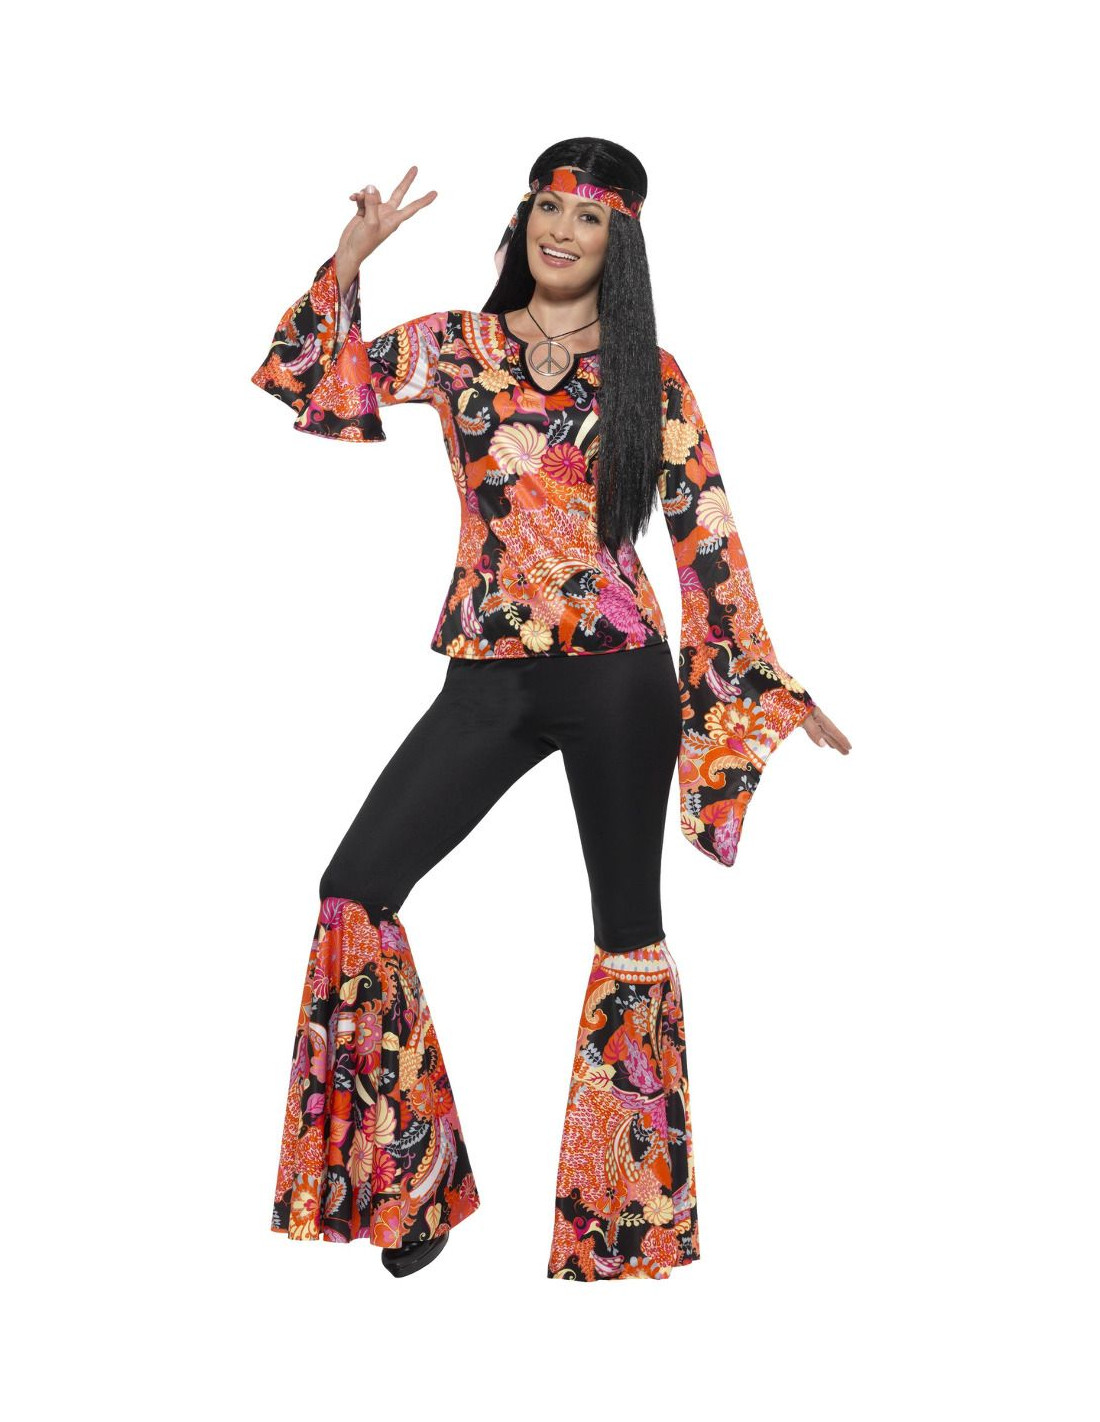 Triplicar Dolor menú Disfraz chica hippie para mujer - Disfraces Bacanal|Envío 24h